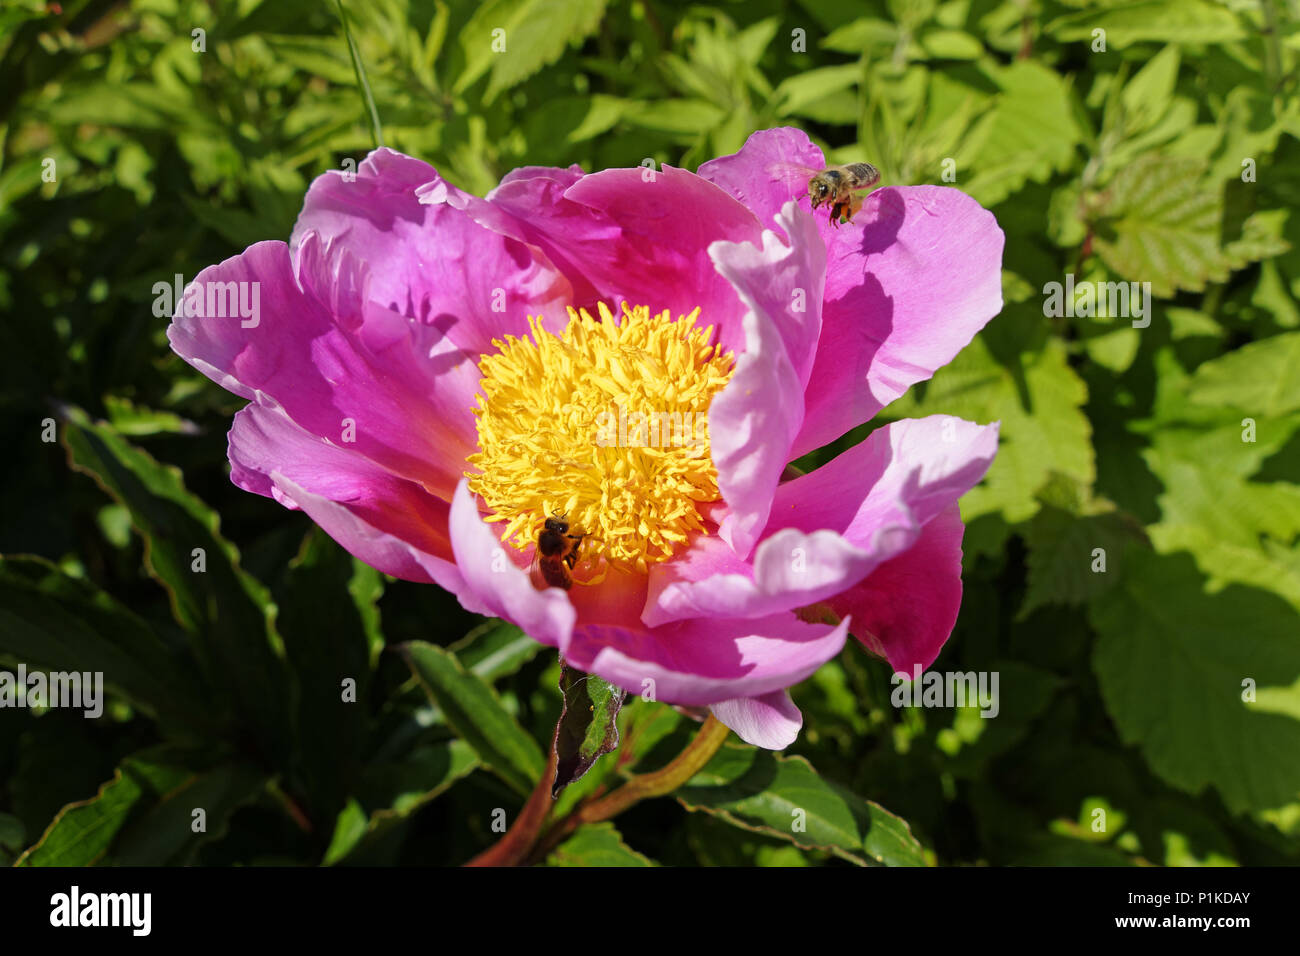 Bienen ernten Pollen aus einer Pfingstrose (Paeonia lactiflora) oder Chinesische Pfingstrose, in der Blüte, im Mai, in einem Garten. Rosenblätter und gelben Staubgefäßen Stockfoto